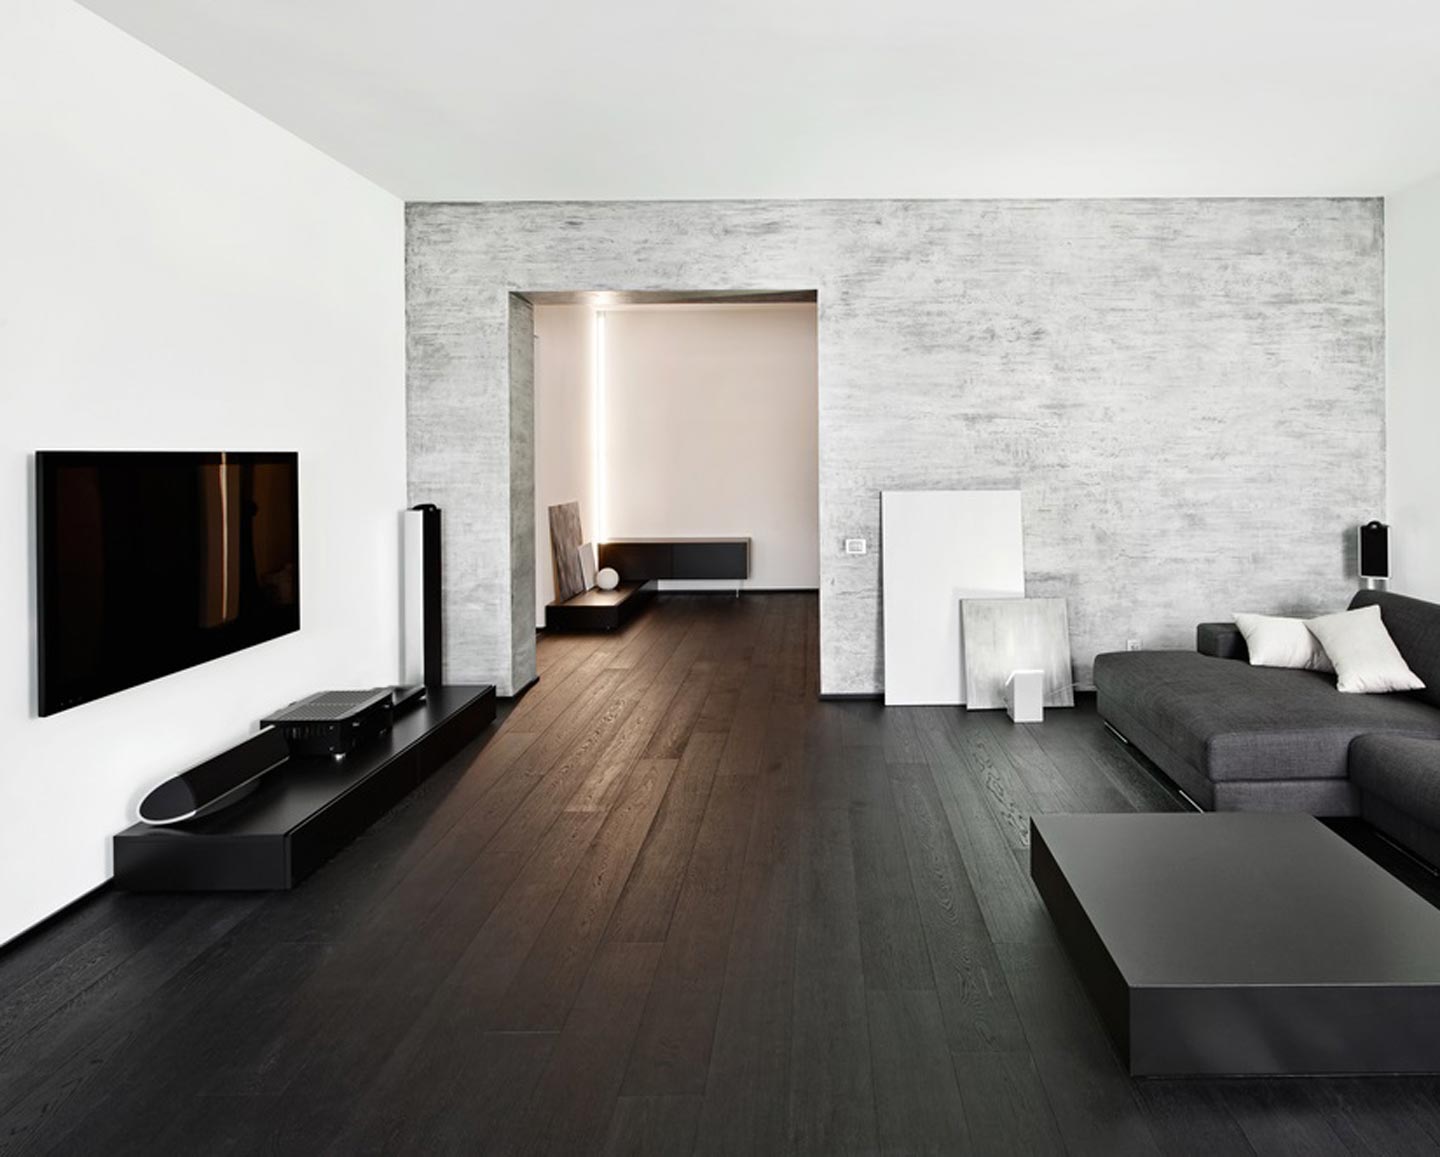 Podea din lemn închisă în interiorul sălii în stilul minimalismului